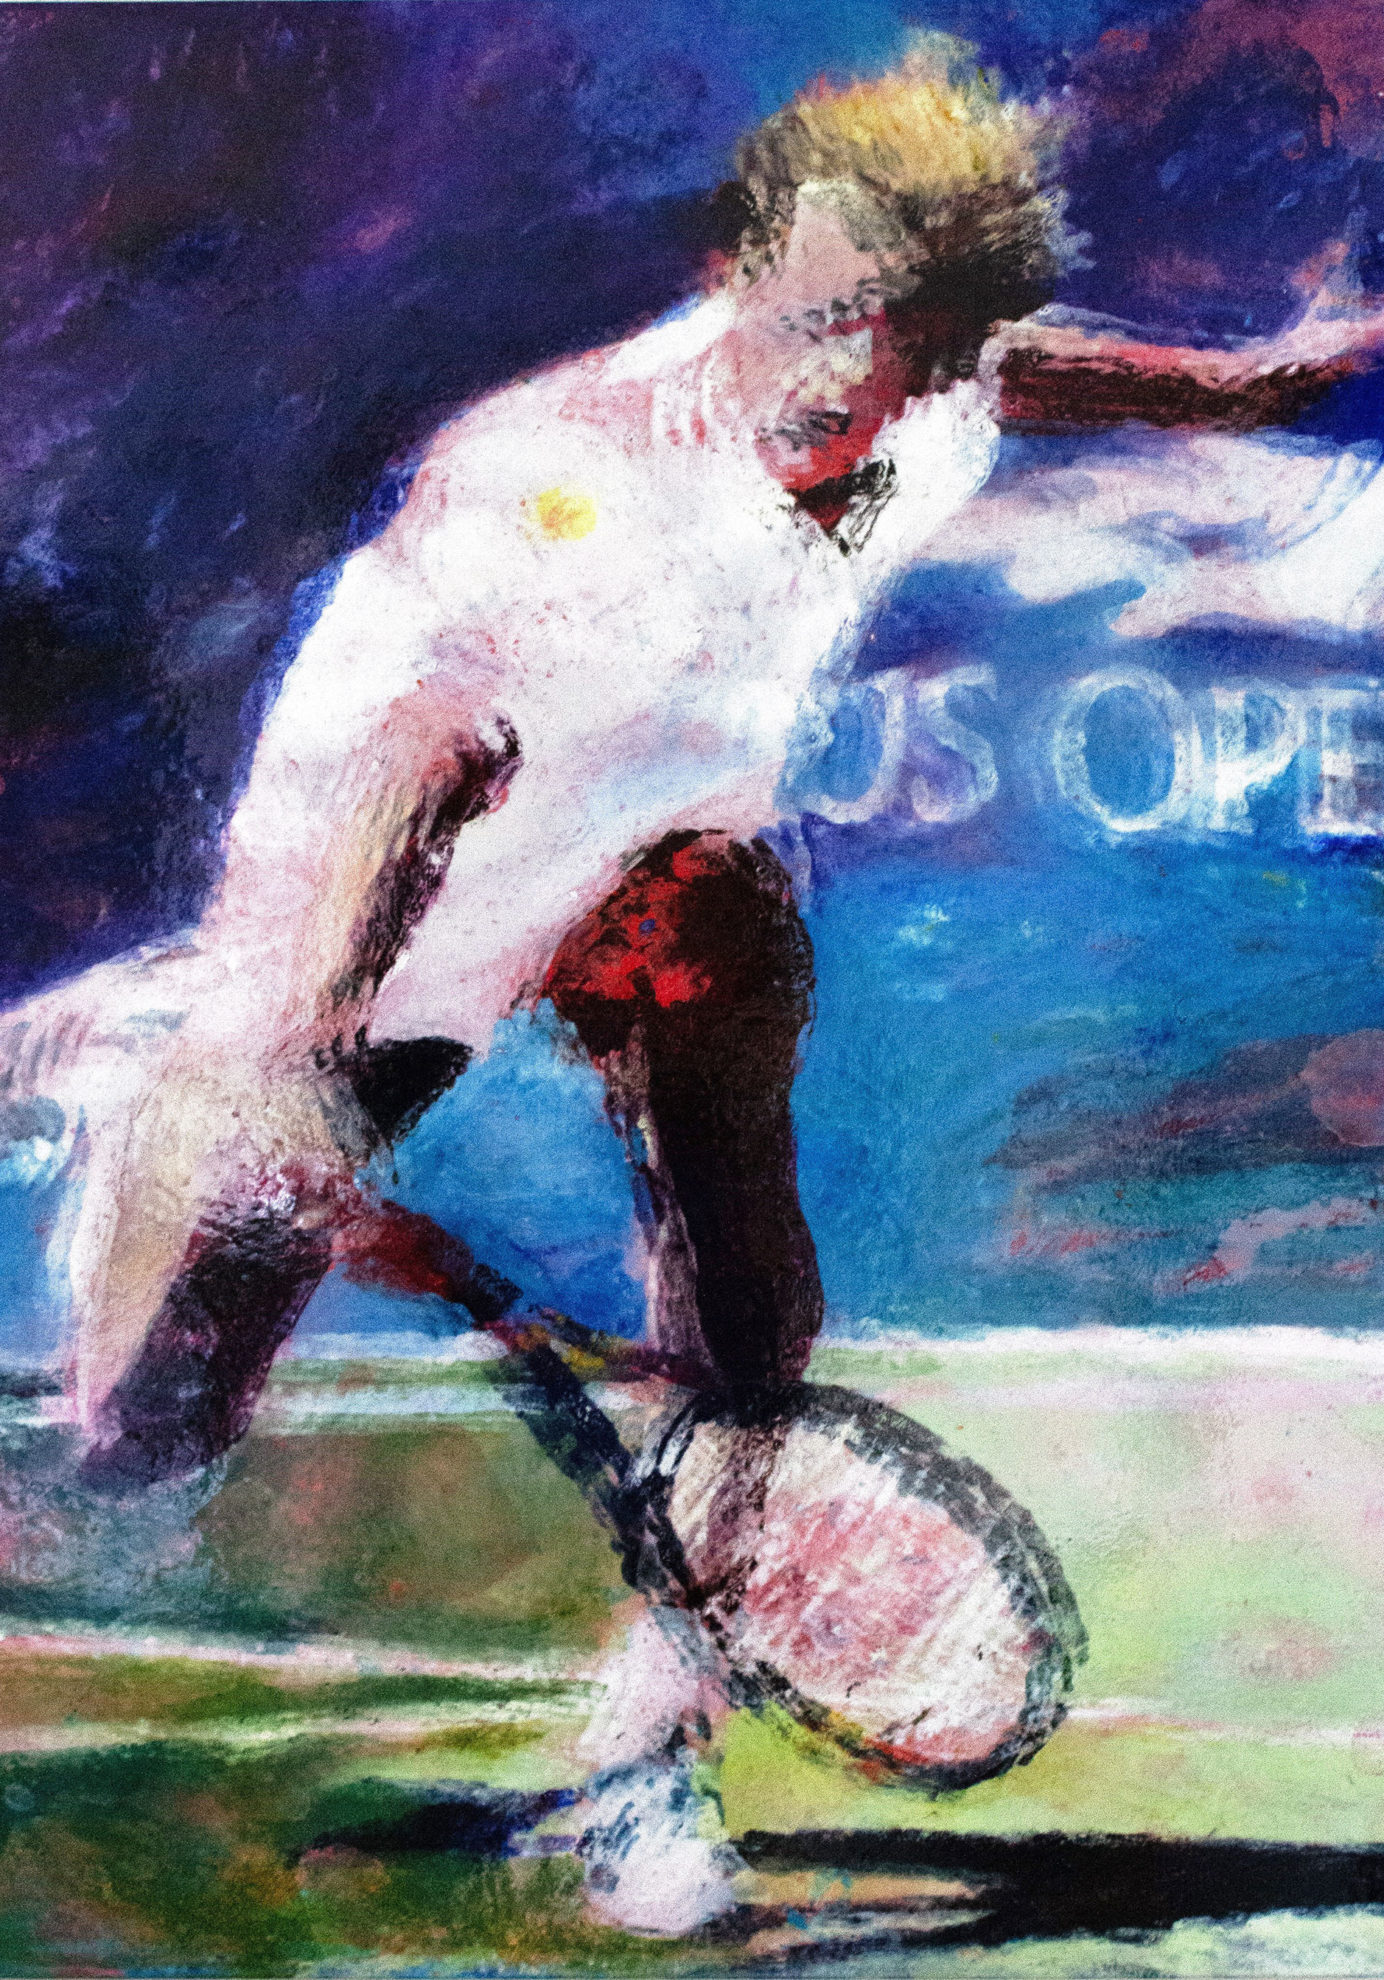 Stefan Edberg, 1992 US Open Champion